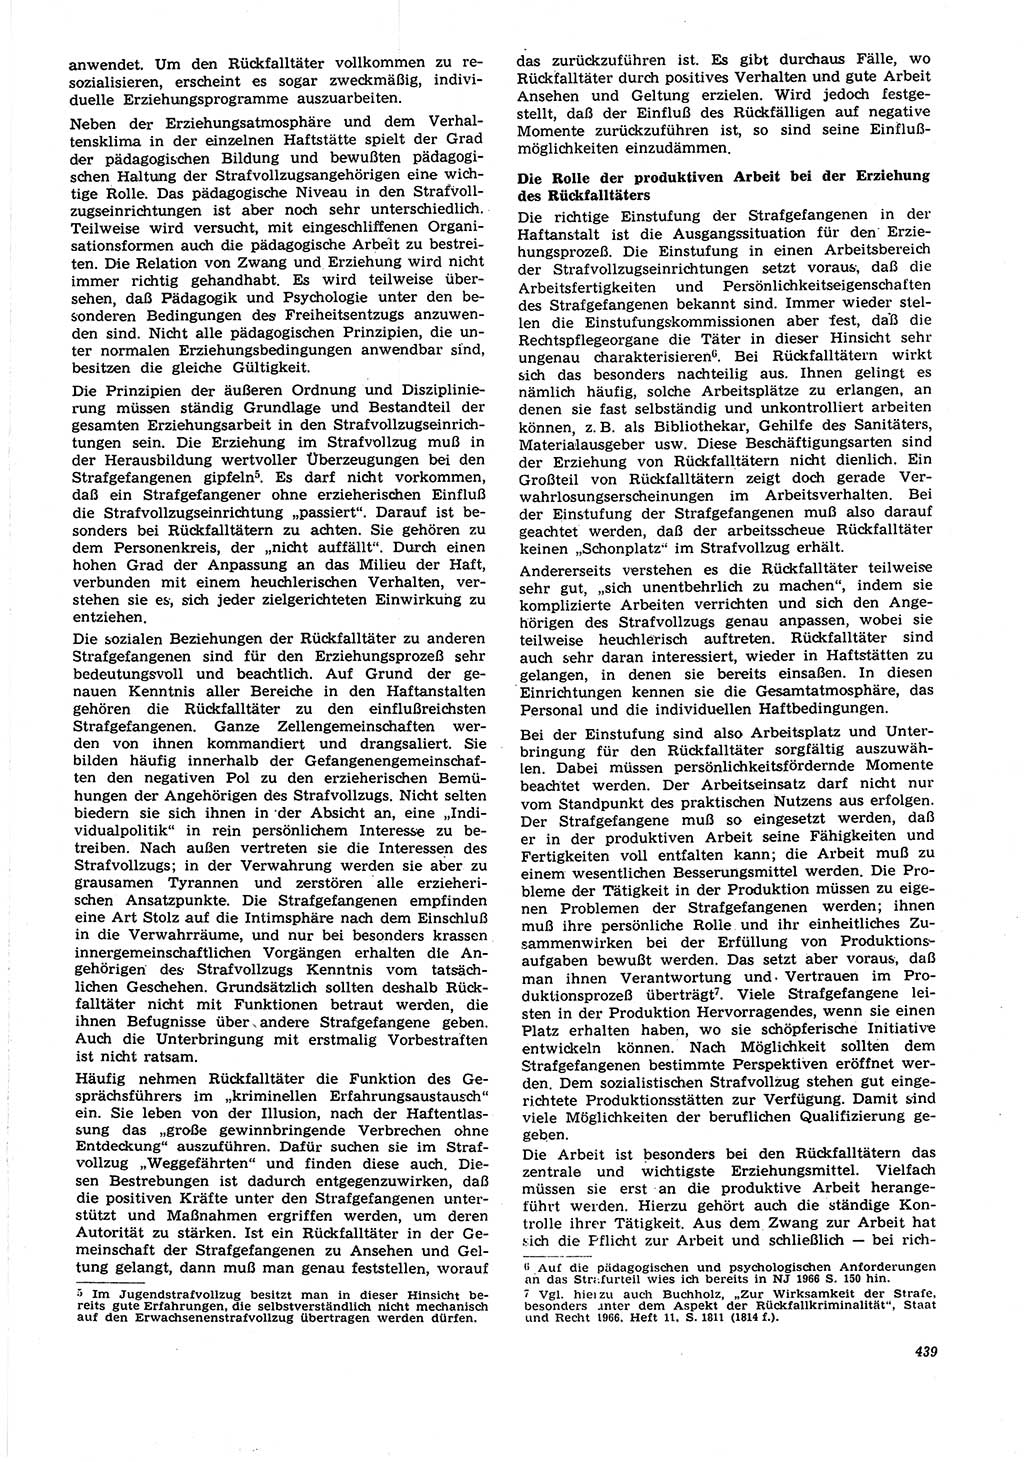 Neue Justiz (NJ), Zeitschrift für Recht und Rechtswissenschaft [Deutsche Demokratische Republik (DDR)], 21. Jahrgang 1967, Seite 439 (NJ DDR 1967, S. 439)